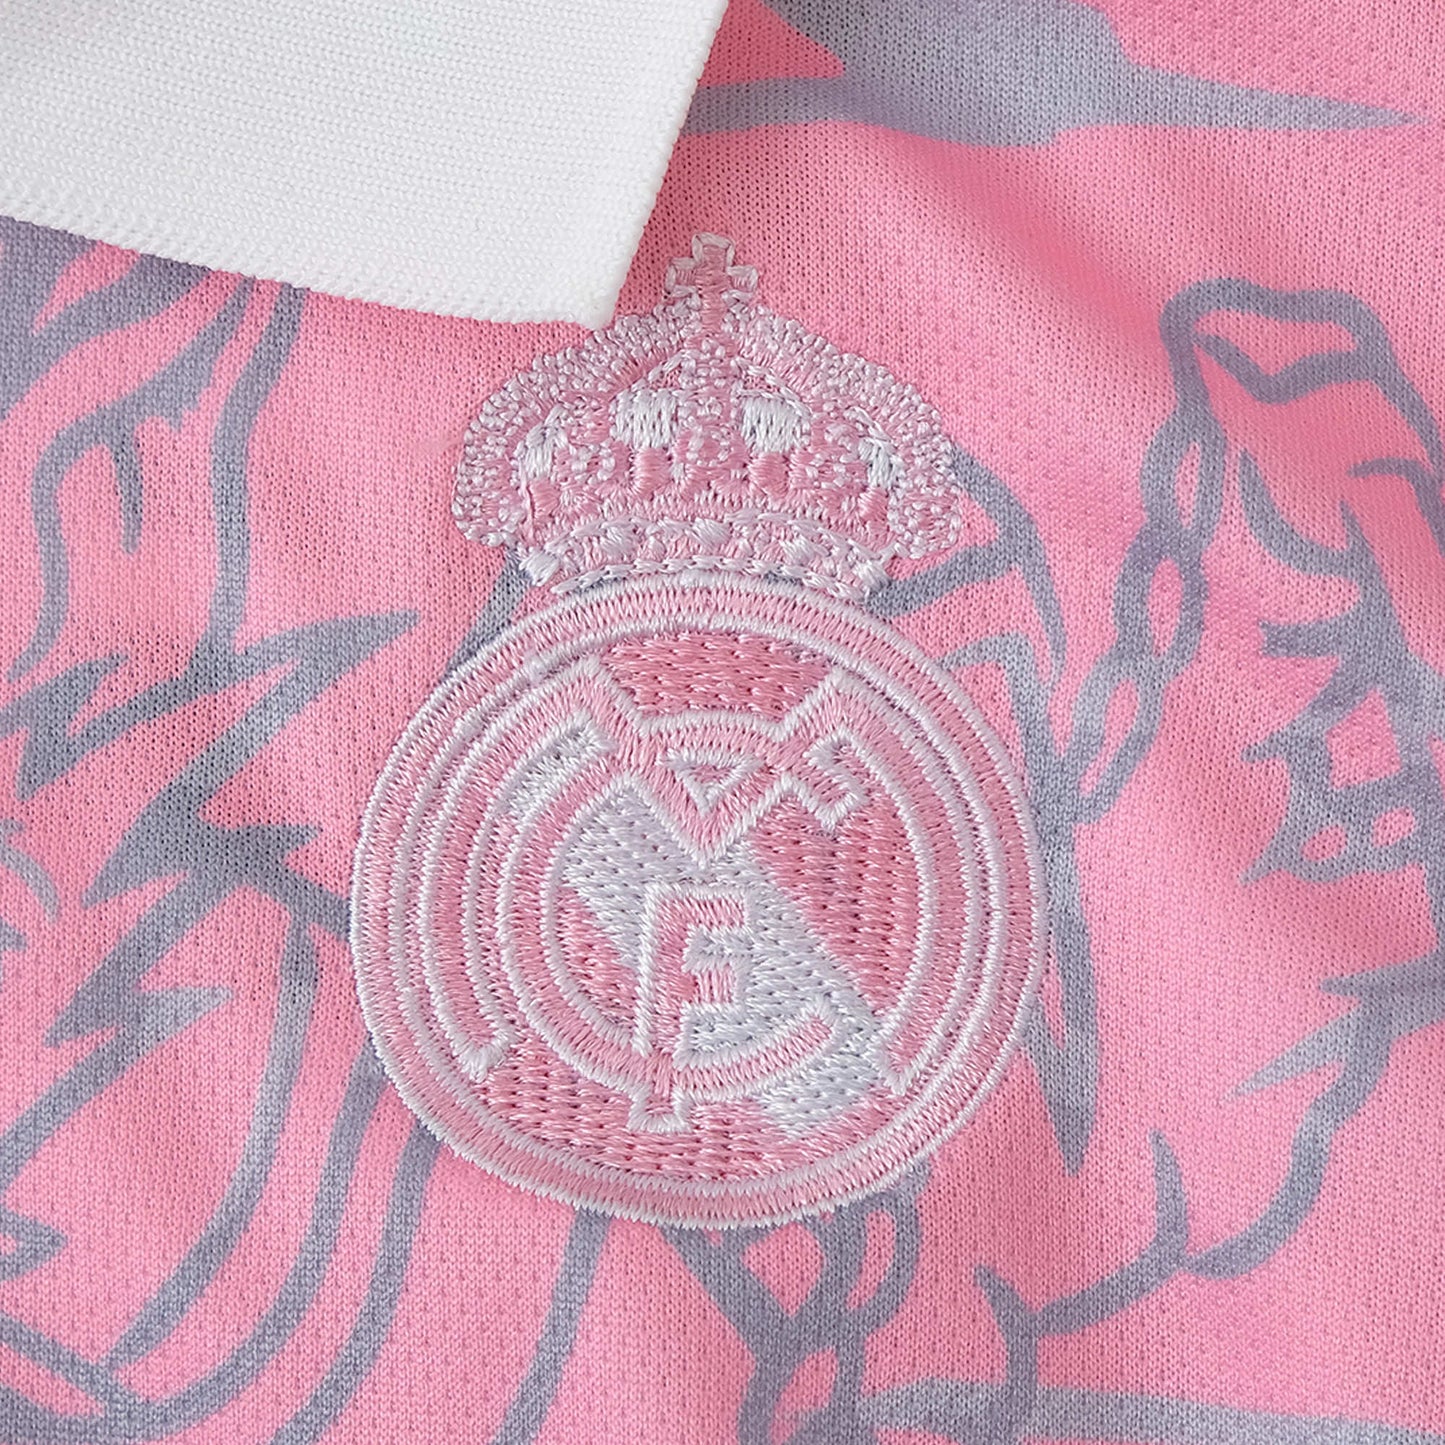 Real Madrid 23/24 Kids "Pink Dragon" Kit